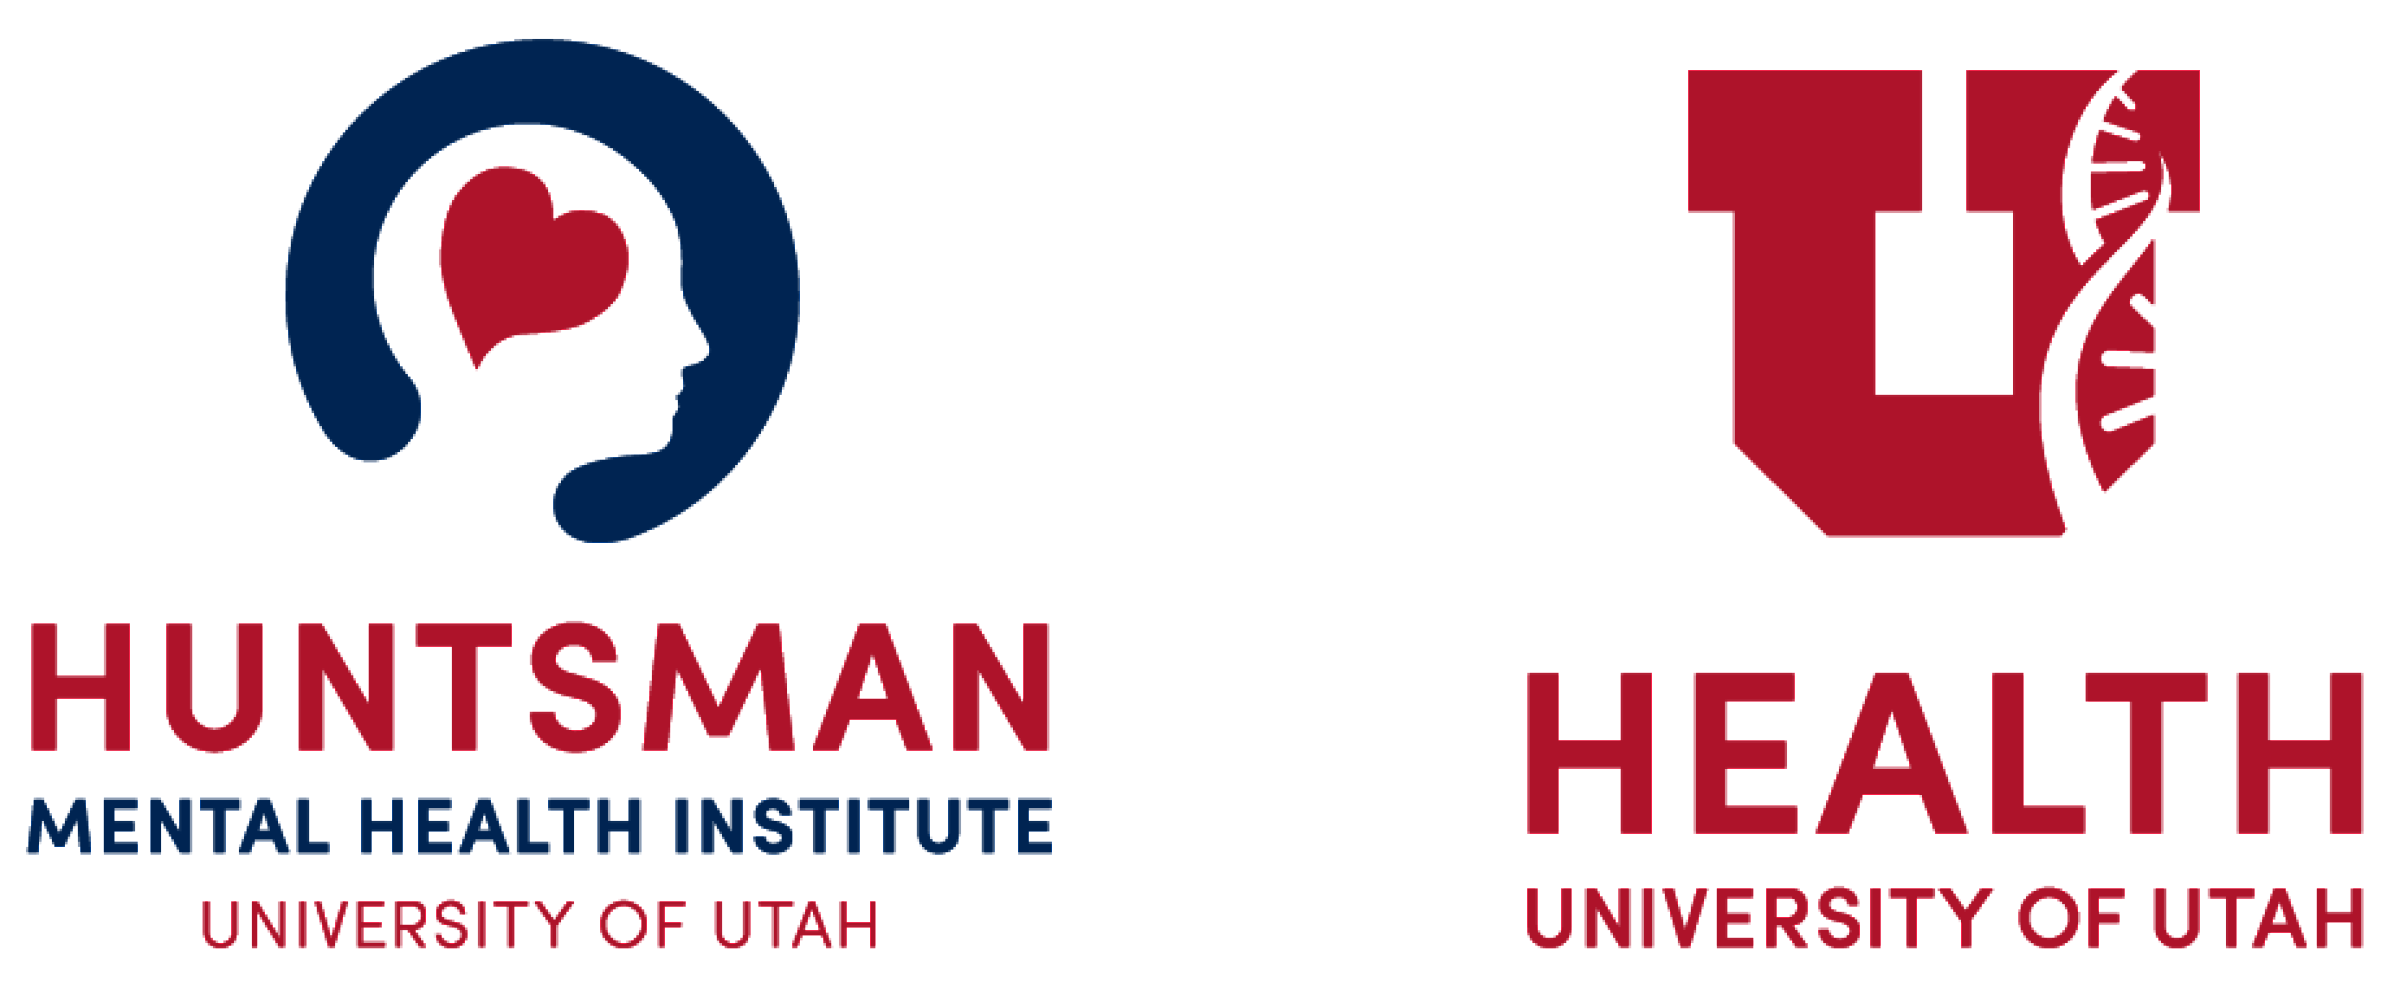 Huntsman Mental Health Institute and University of Utah Health horizontal logo